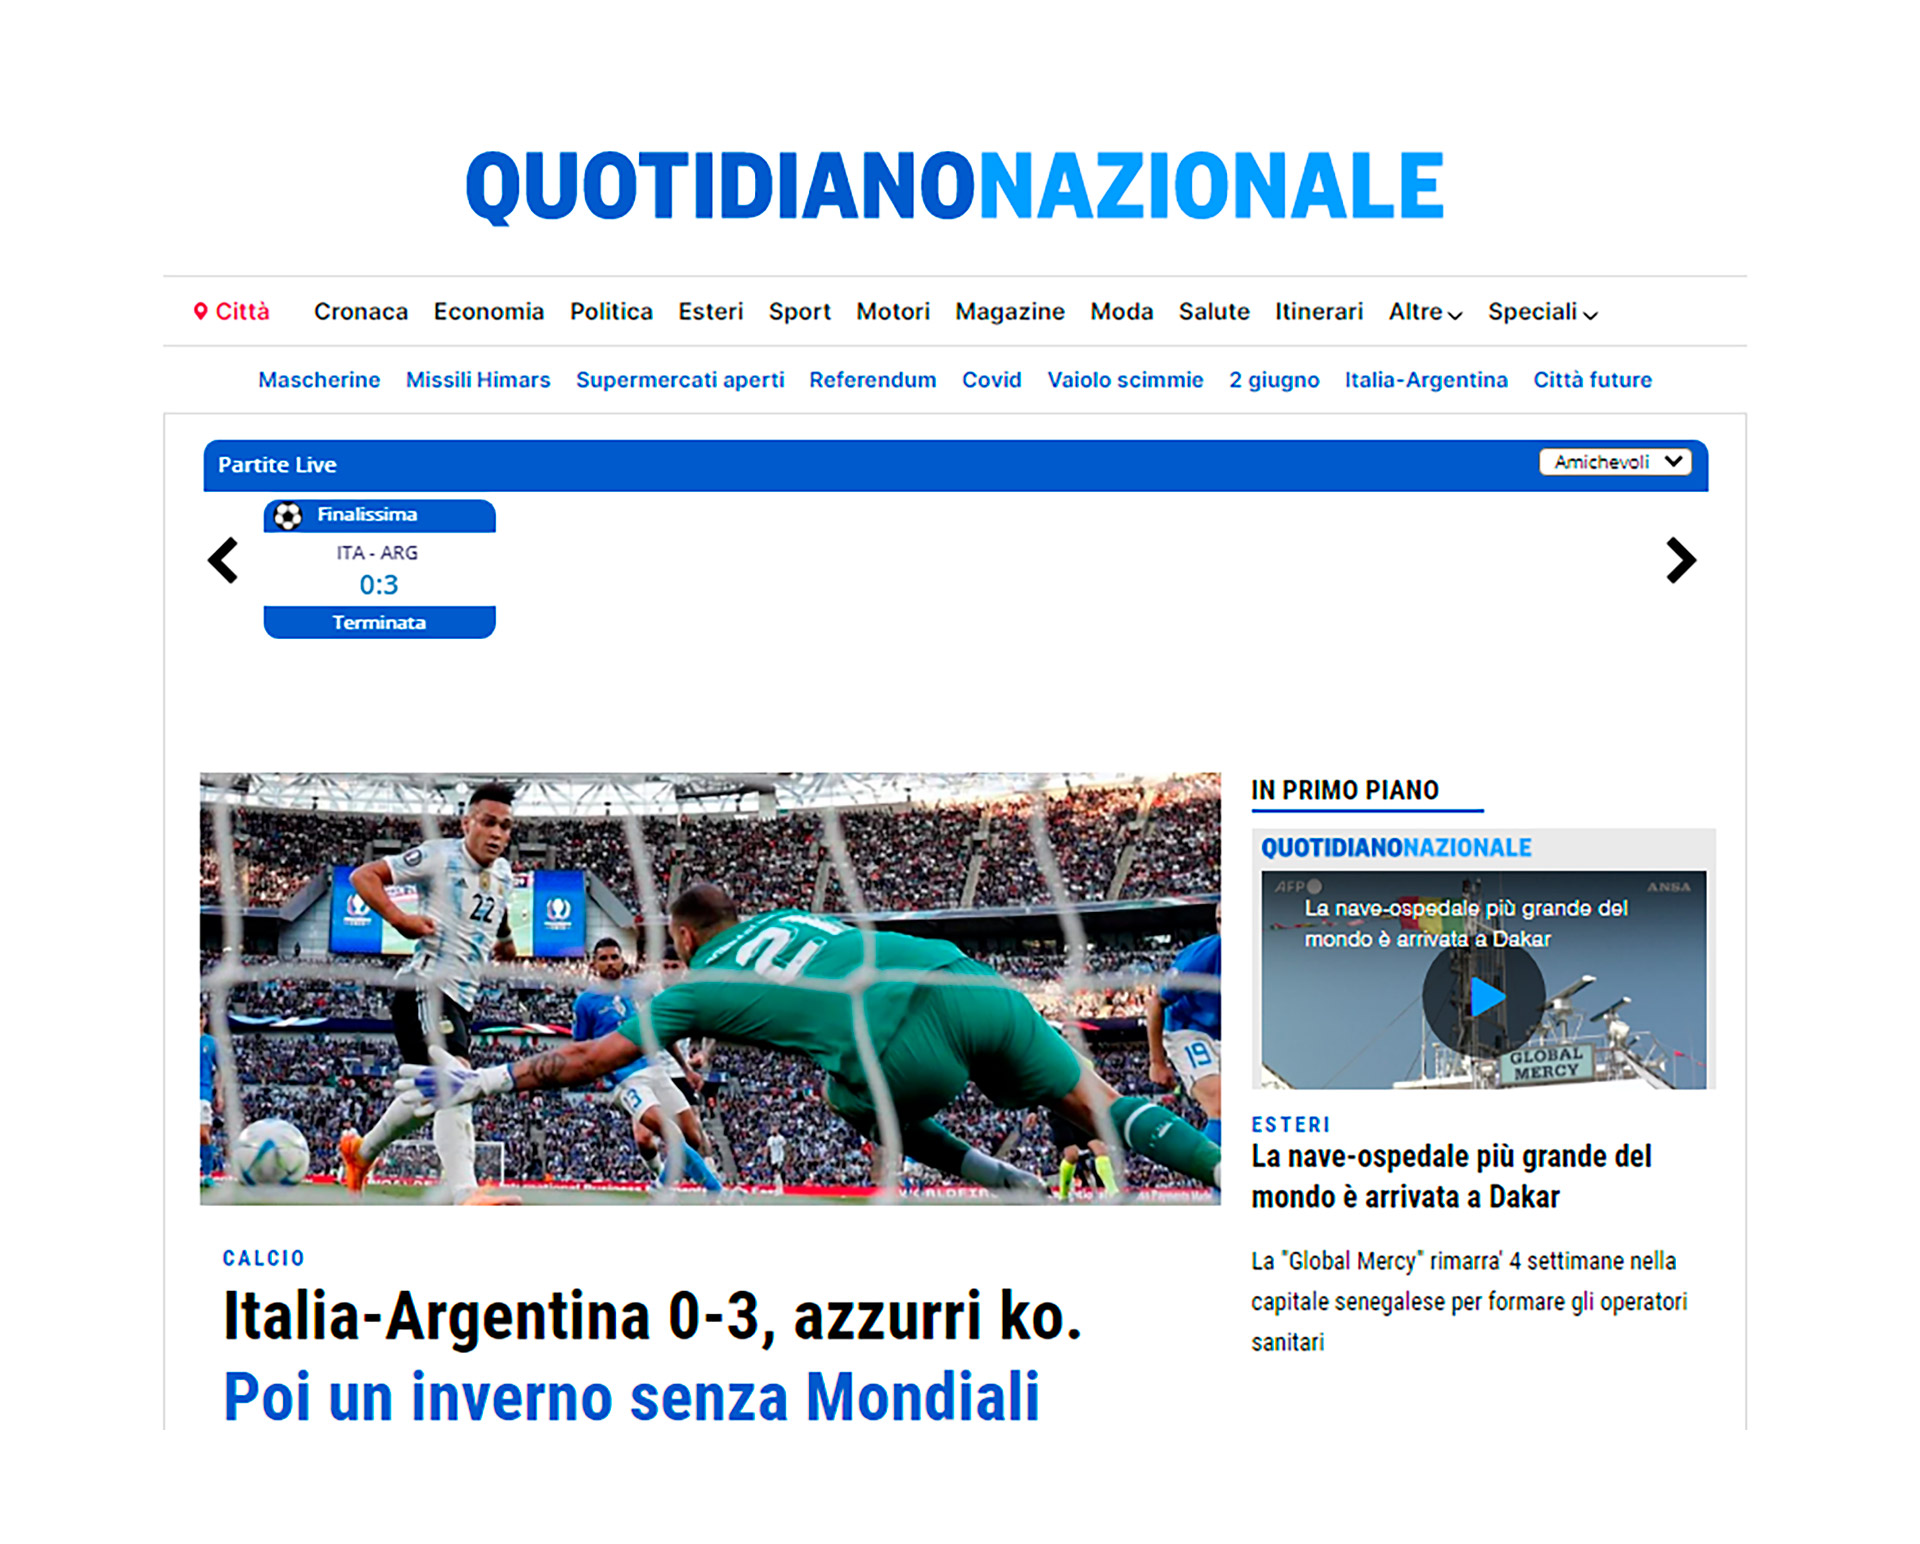 Italia-Argentina 0-3, Azzurri K.O. Luego un invierno sin la Copa del Mundo (Quotidiano Nazionale)